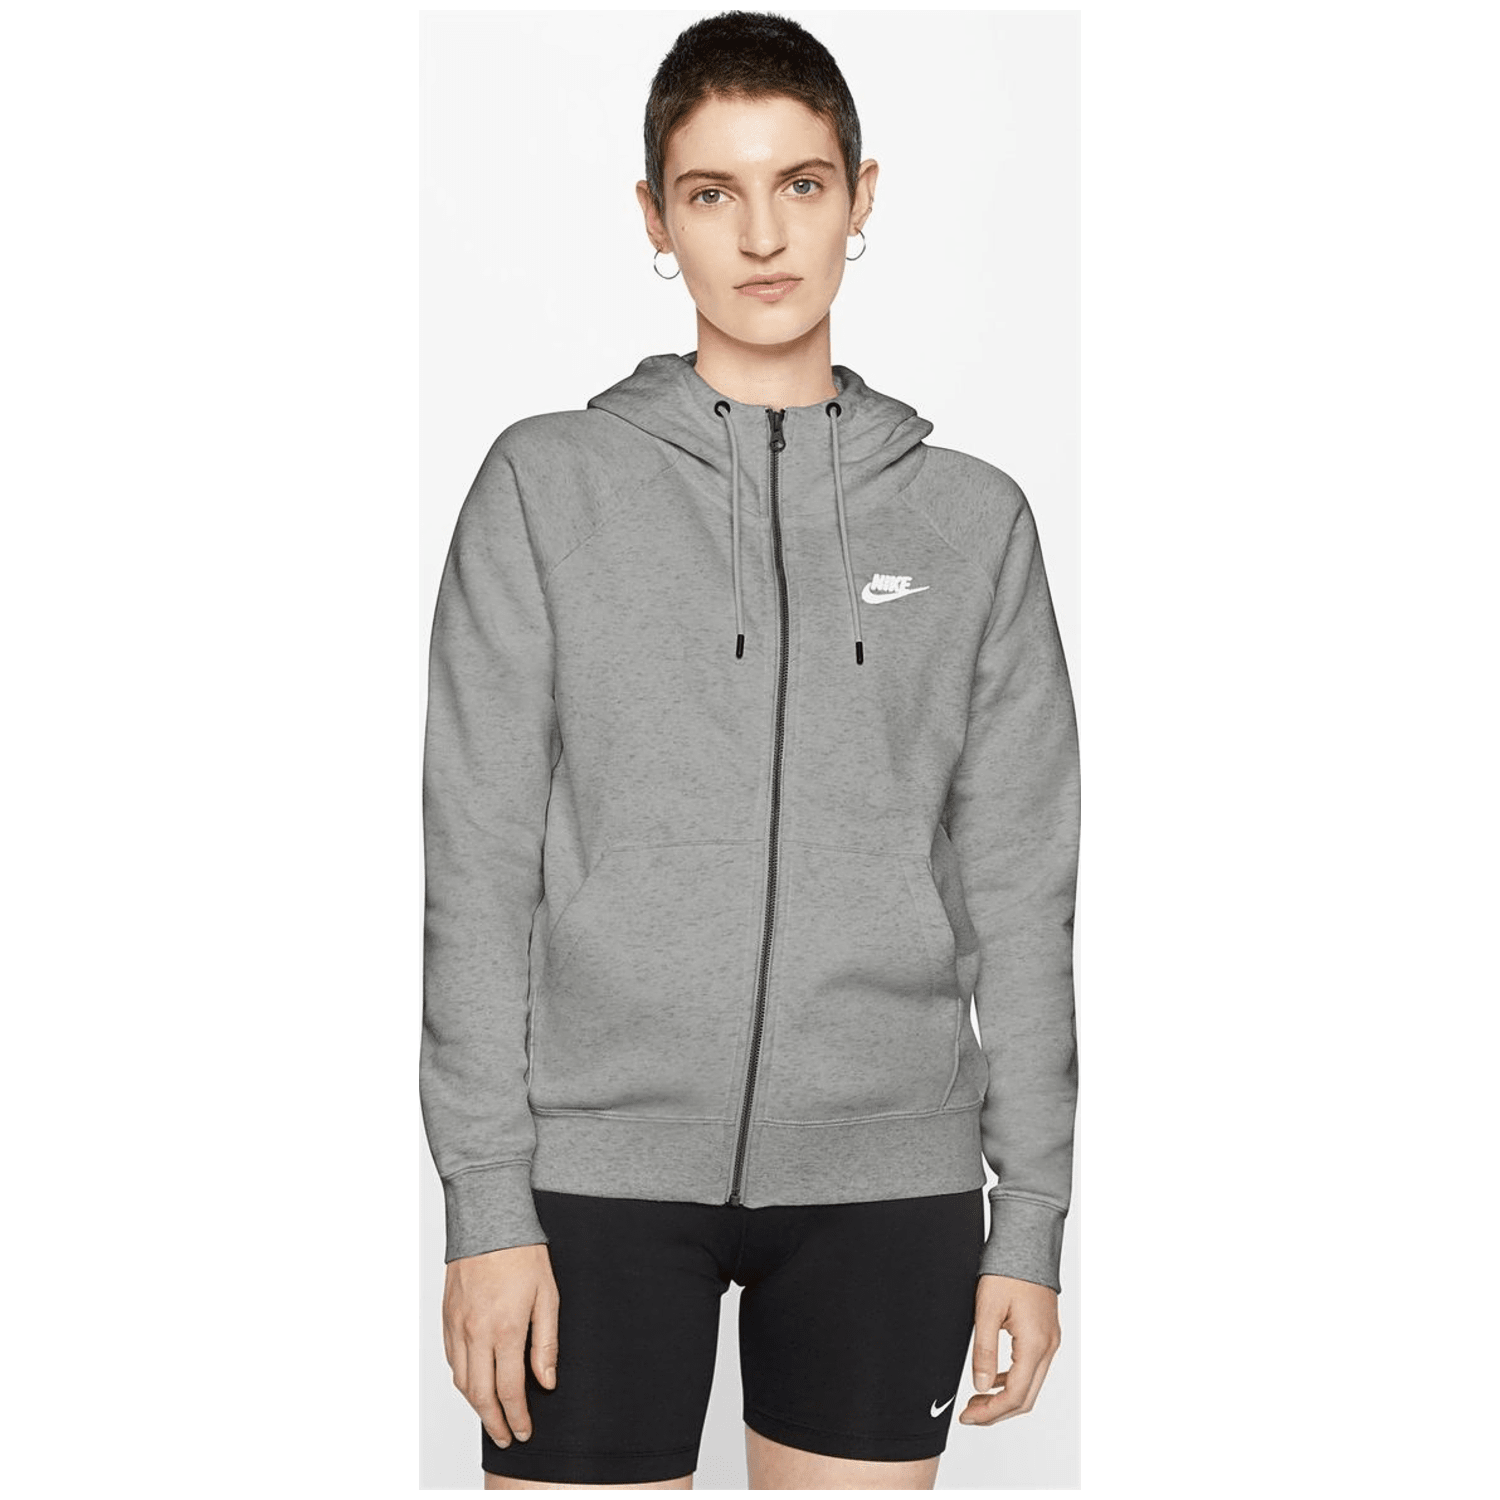 Nike Sportswear Essential Full-Zip  Damen Unterjacke